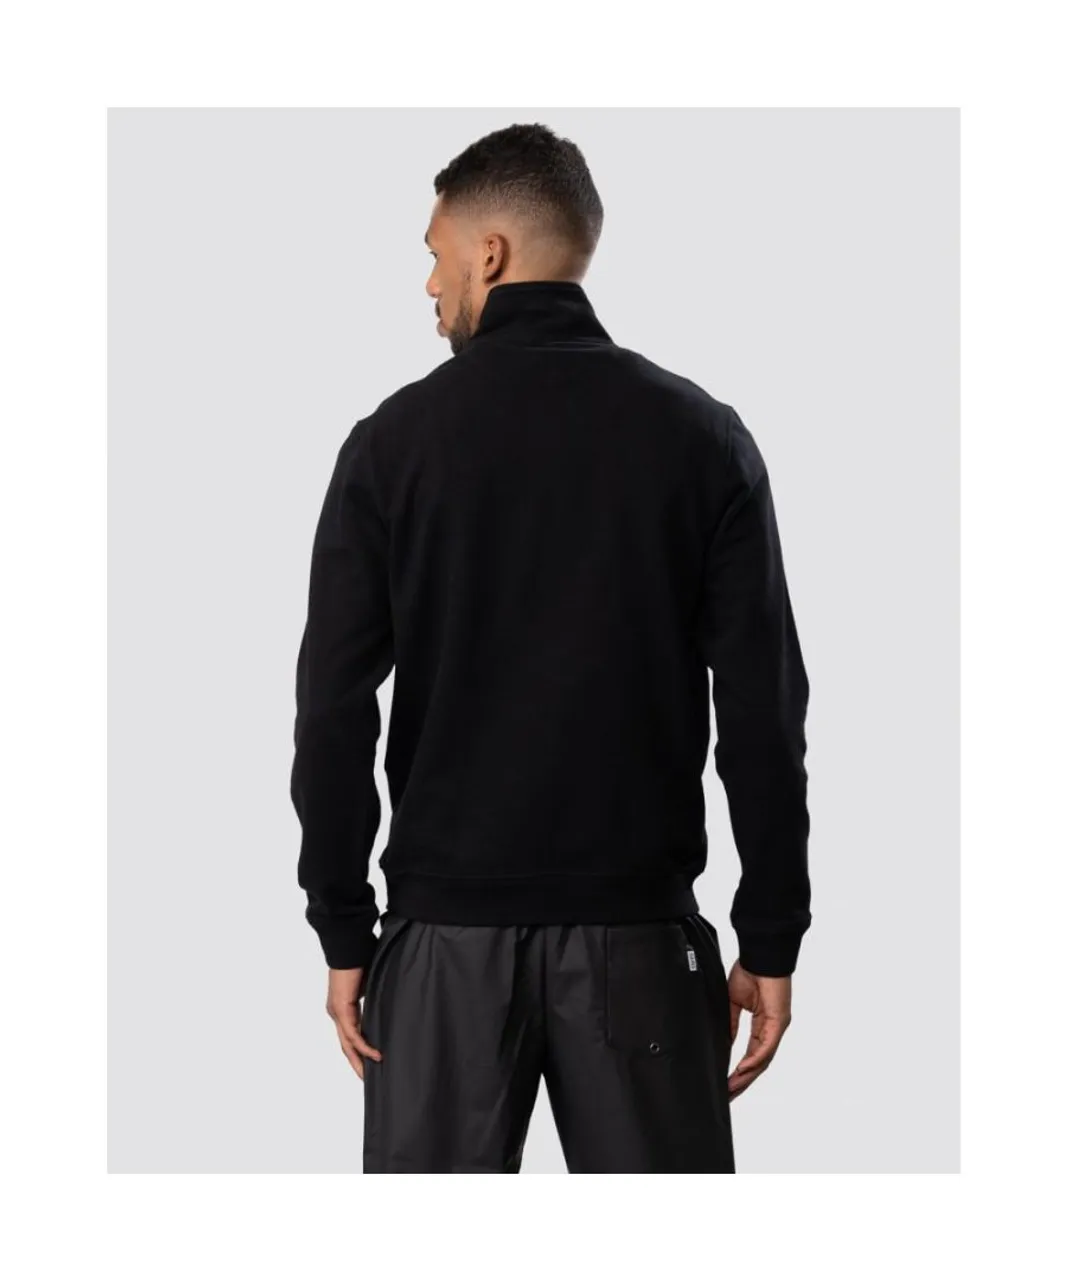 Belstaff Mens Quarter Zip Sweatshirt - Black Cotton